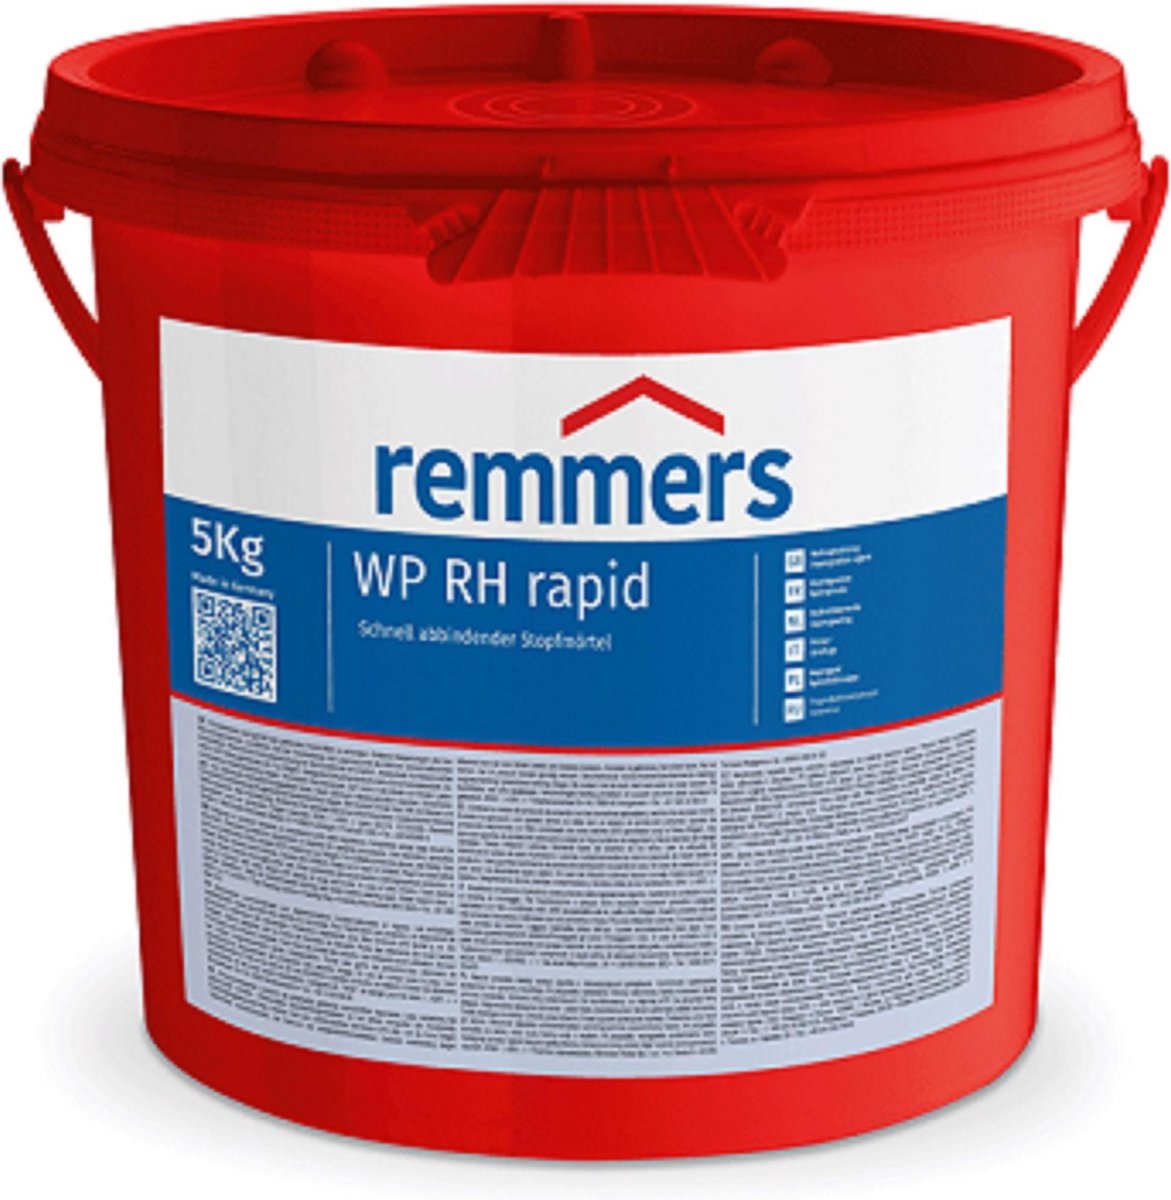 WP RH rapid/ Rapidcement 5kg